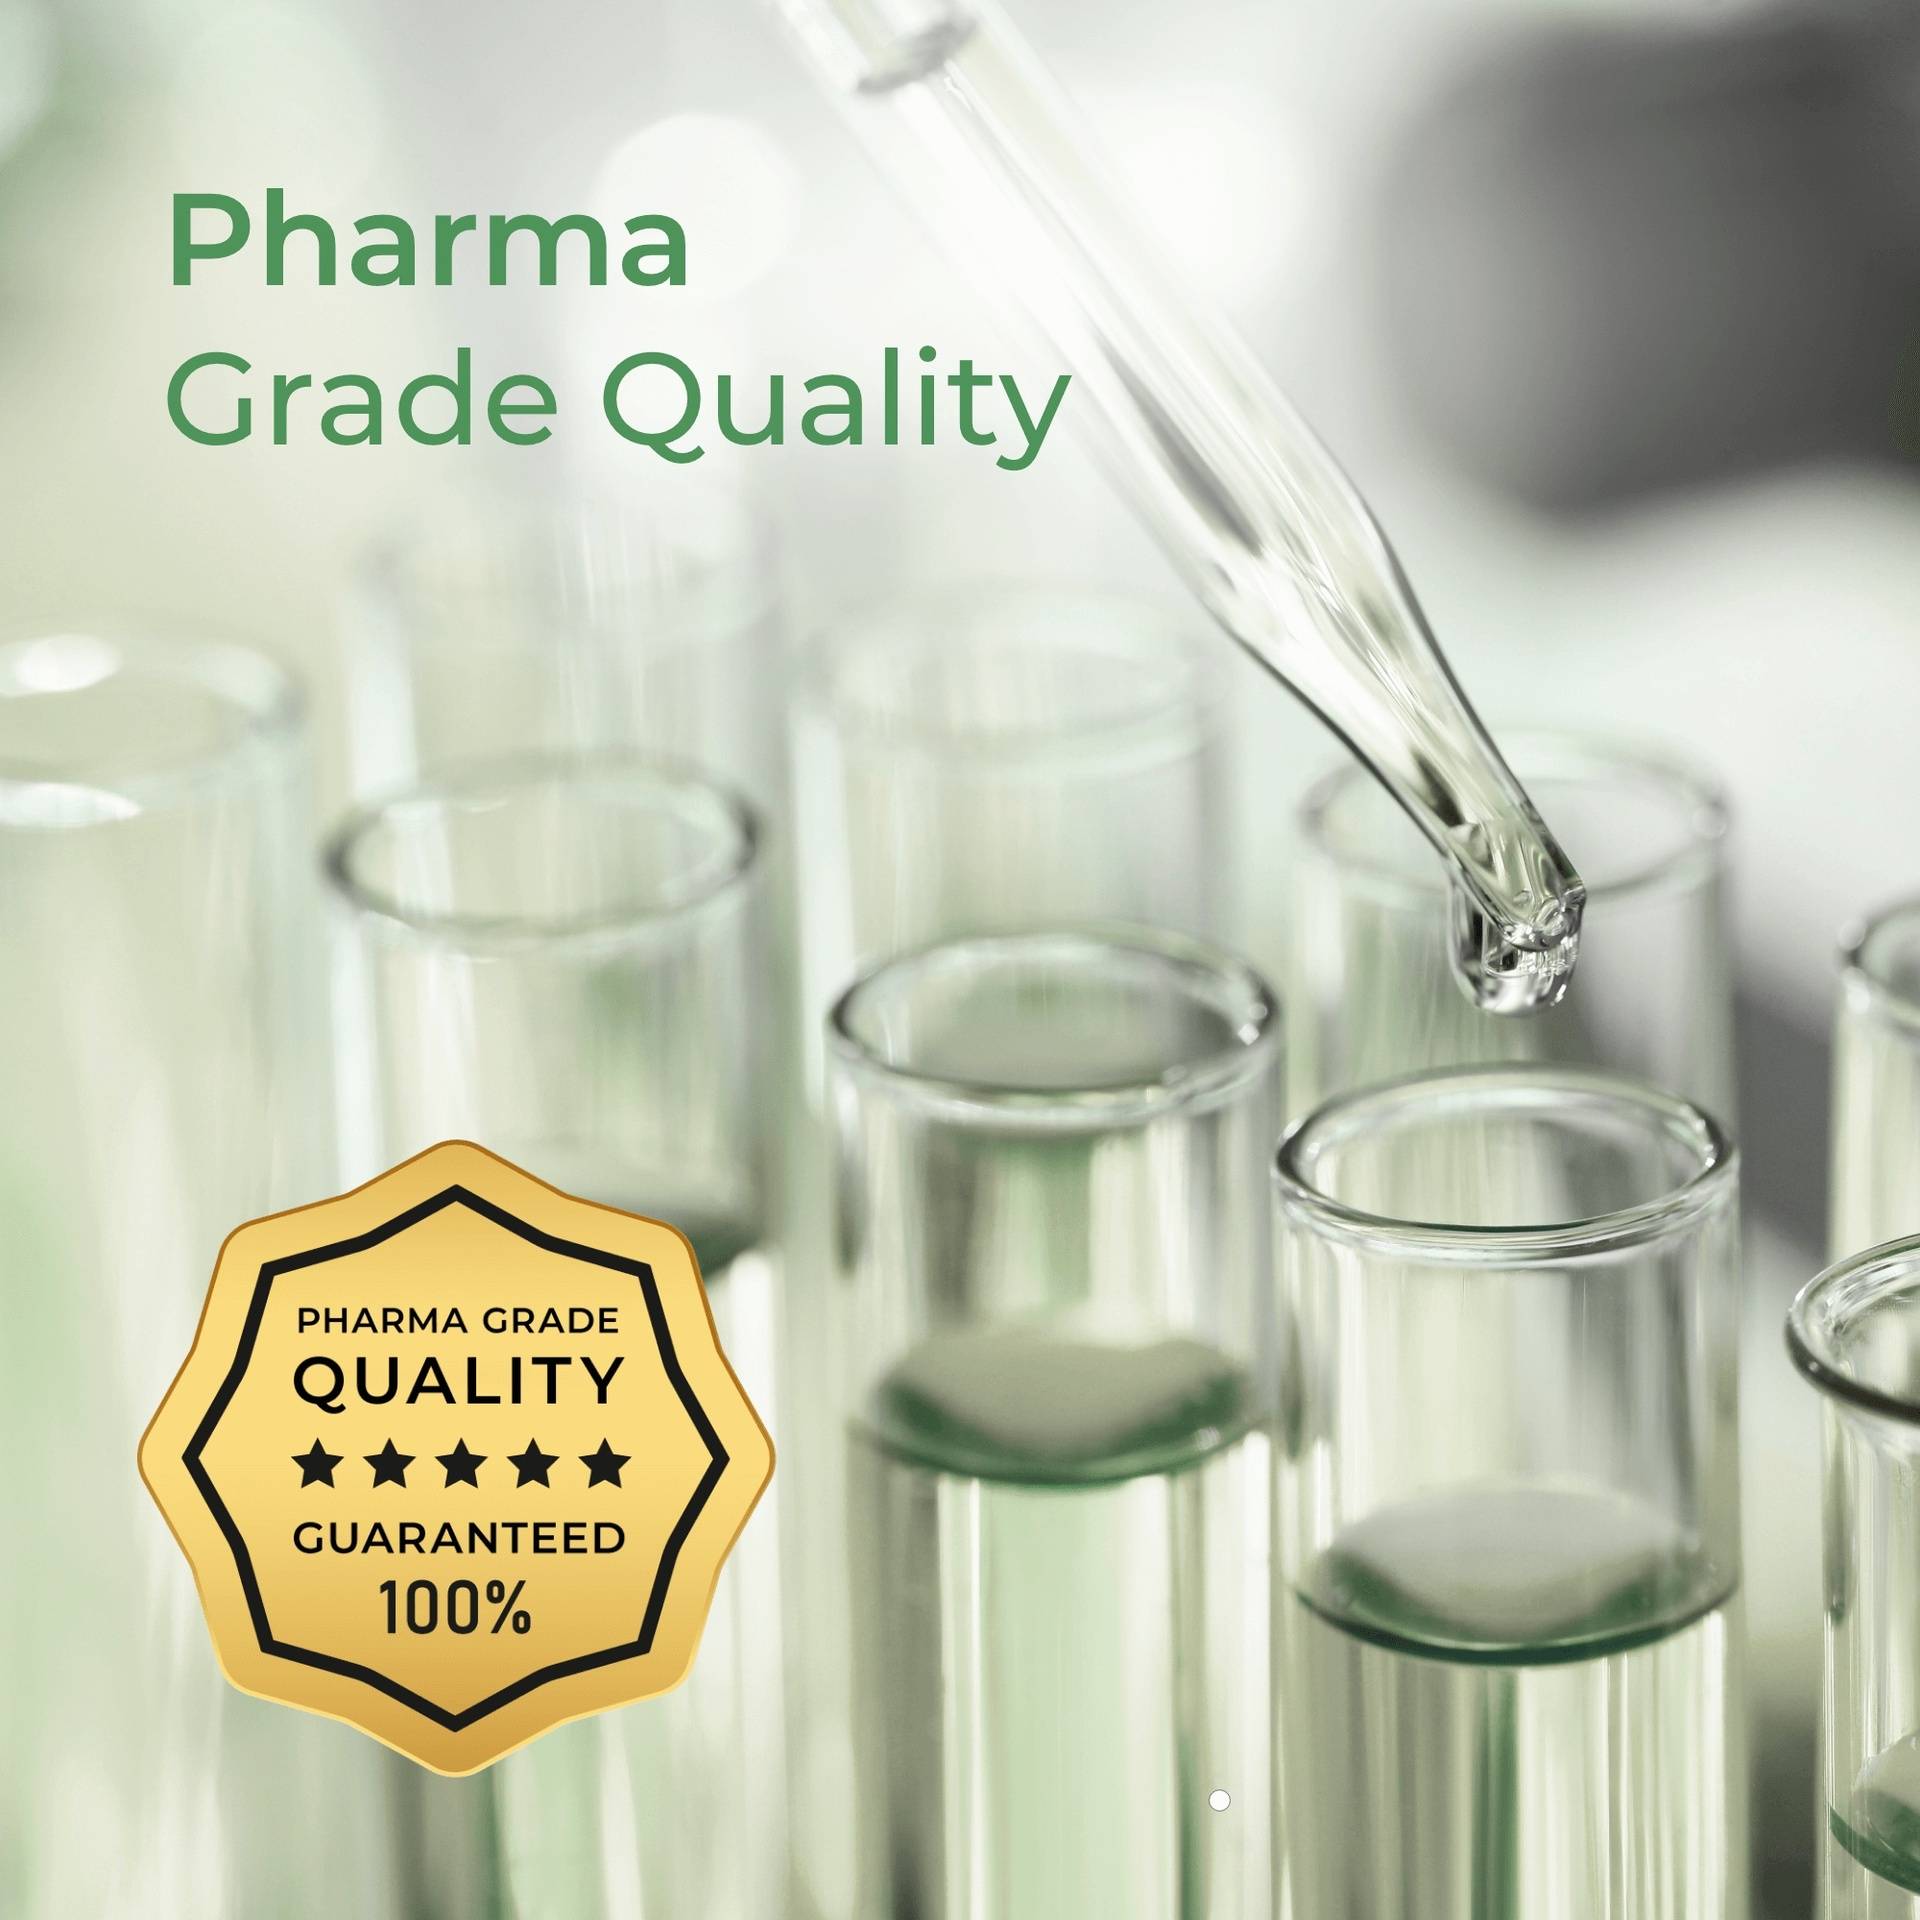 Pharma Grade Quality